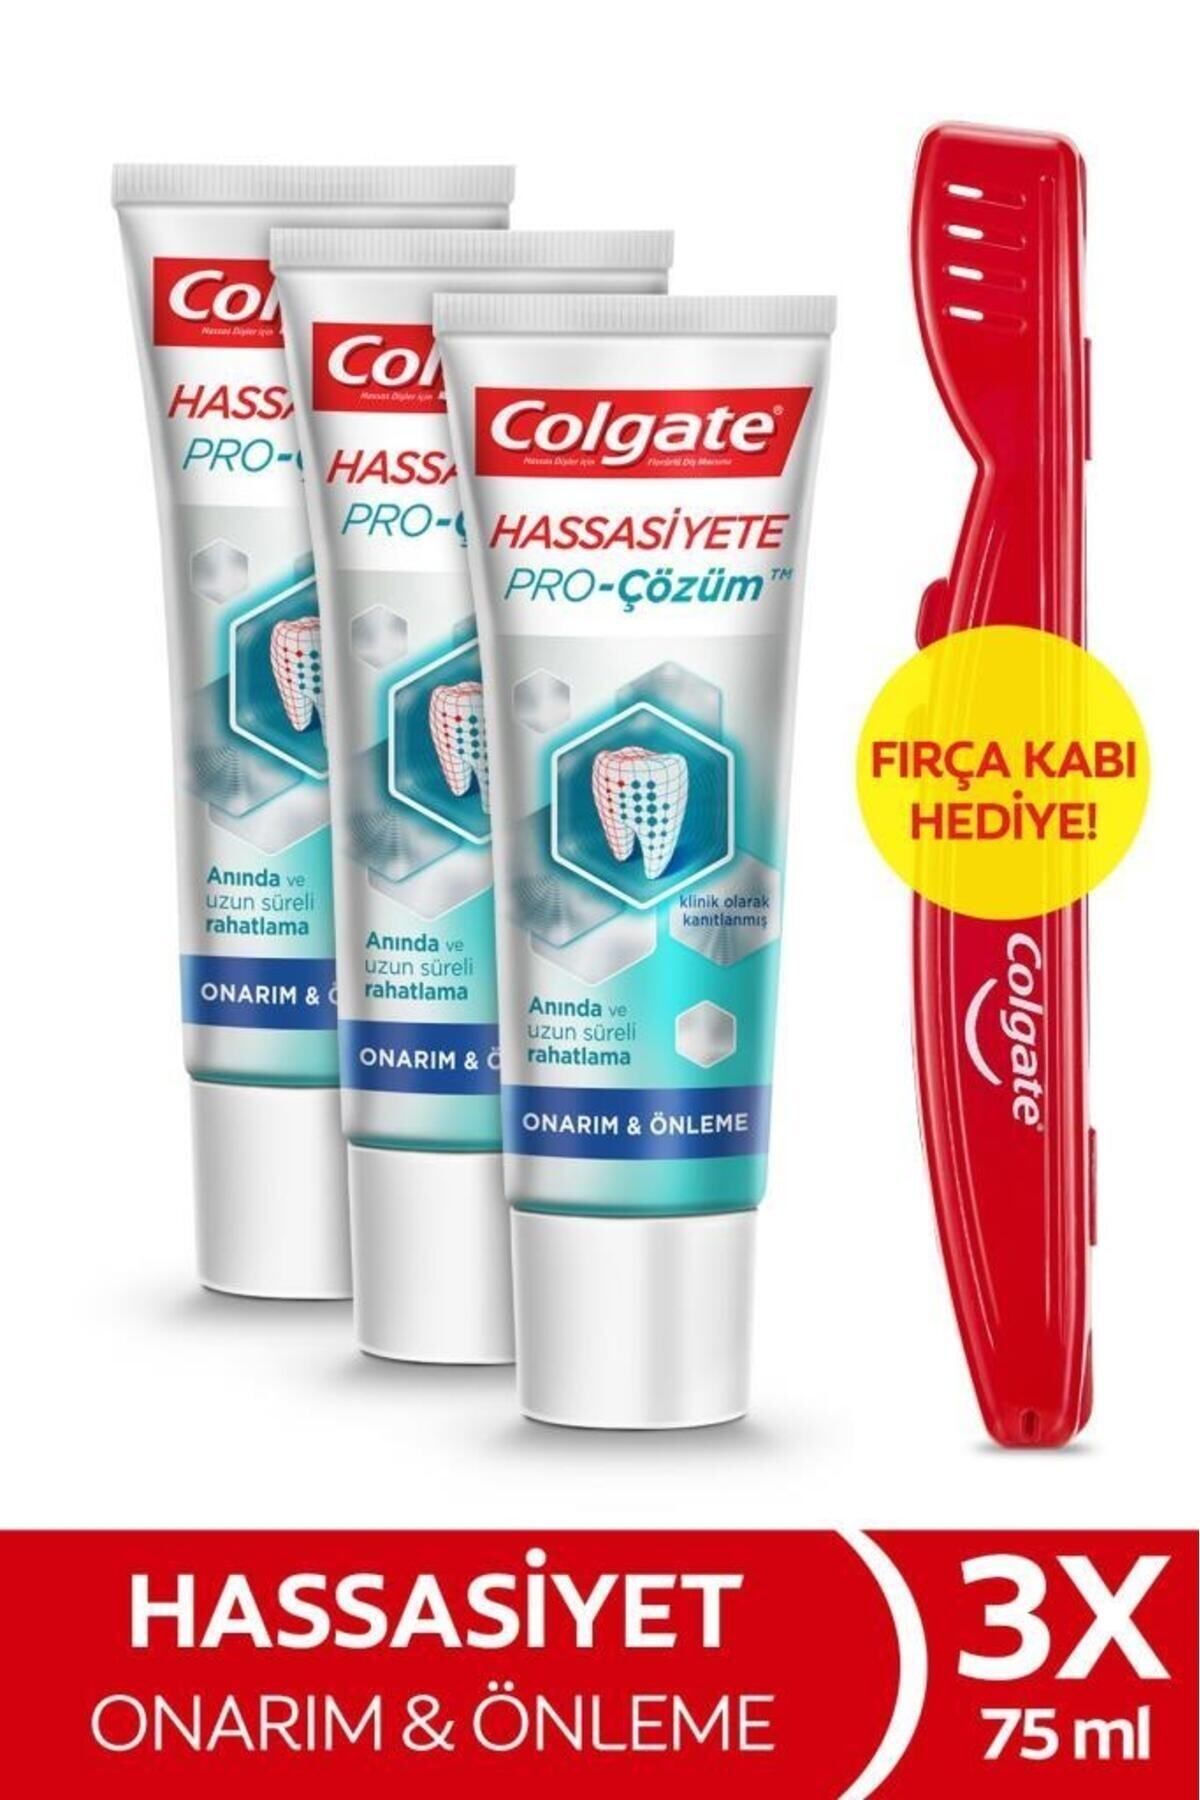 Colgate Hassasiyete Pro Çözüm Onarım ve Önleme Pro Relief Diş Macunu 75 ml x3 Adet+Fırça Kabı Hediye